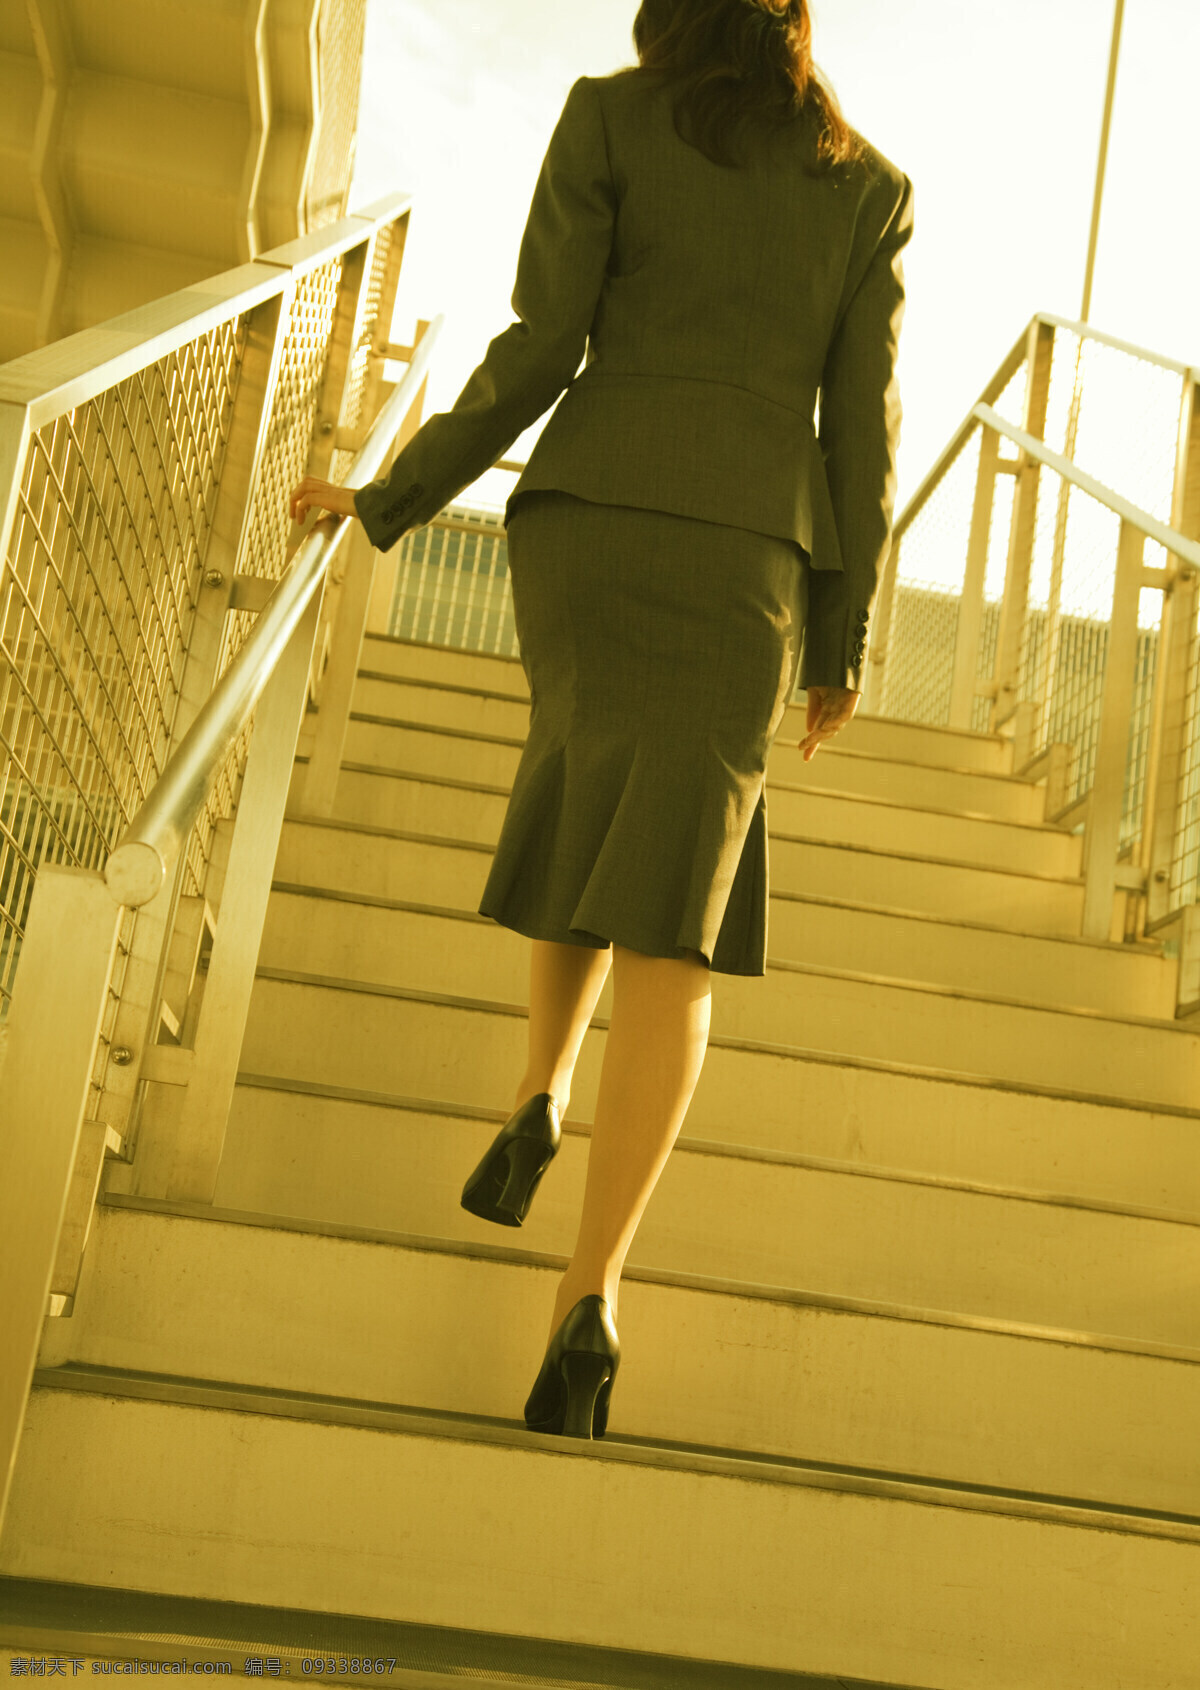 爬 楼梯 商务 女人 商业素材 职业人物 商务美女 白领 职场 爬楼梯 商务人士 人物图片